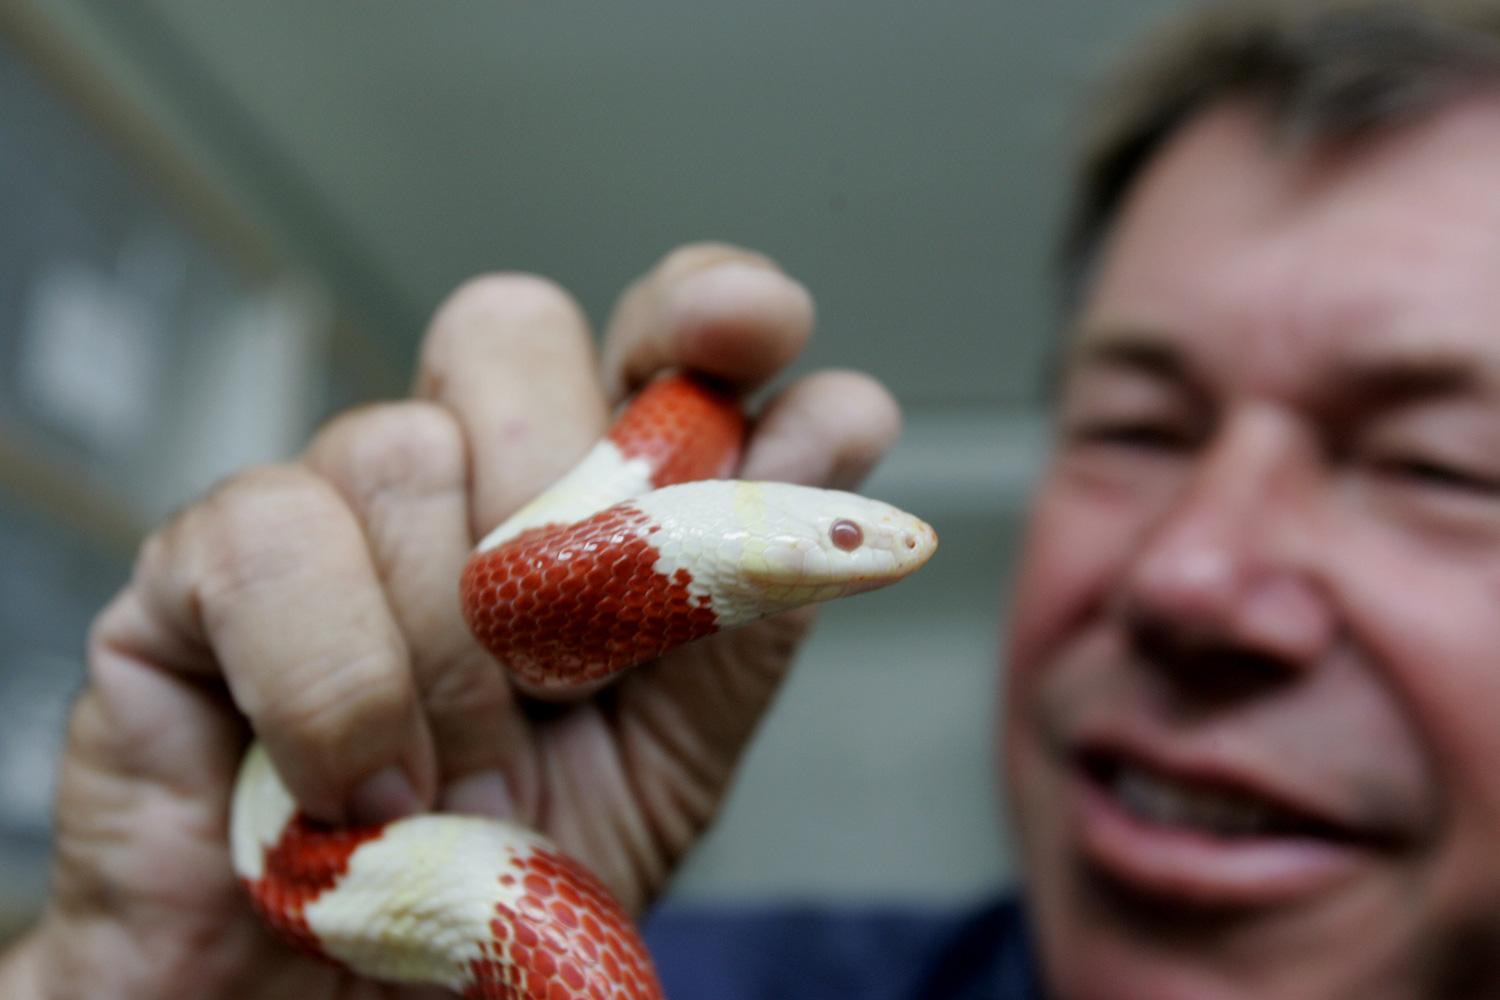 Djurexperten Jules Sylvester, som Aftonbladet pratat med, är hyfsat säker på vilken orm det rör sig om. ”Det ser ut som en ung majsorm”, säger han. Bilden är tagen vid ett annat tillfälle.